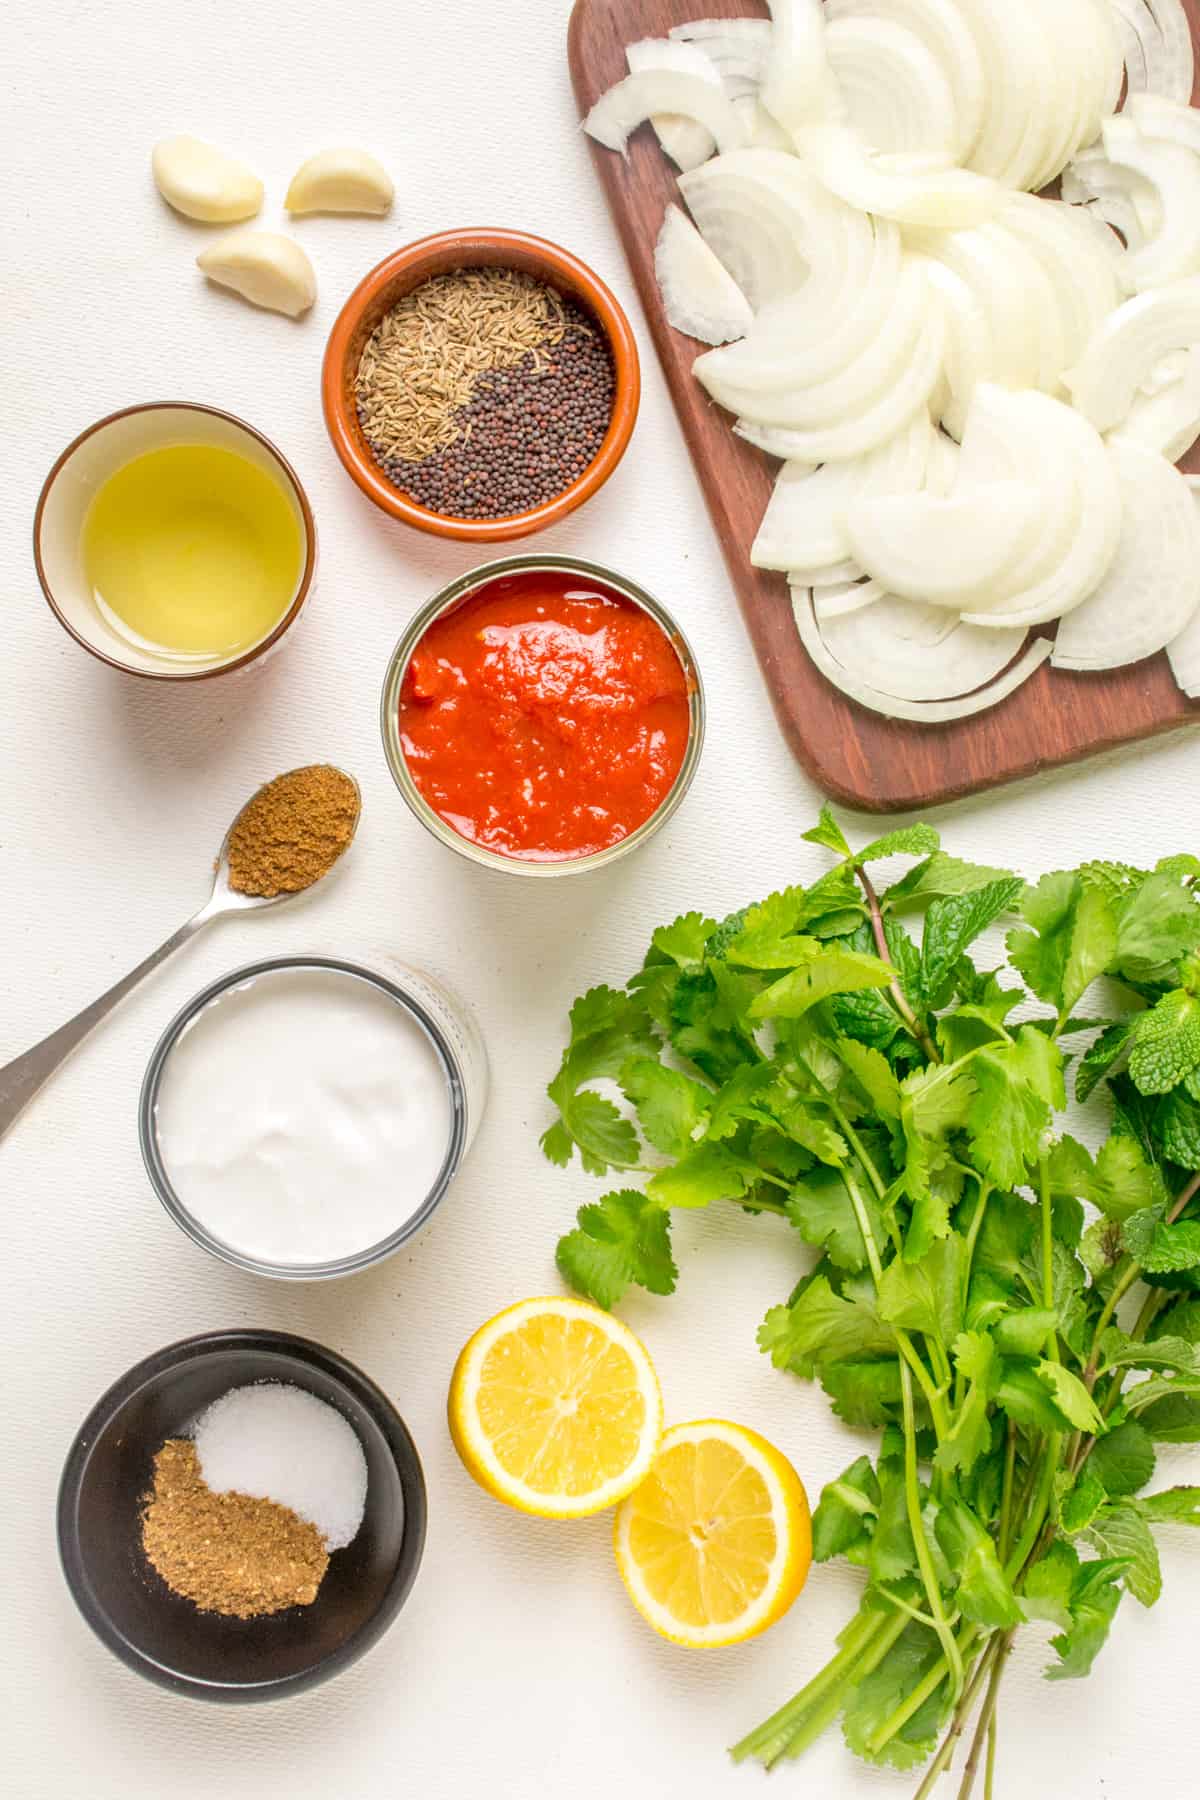 Ingredients for the vegan masala sauce.